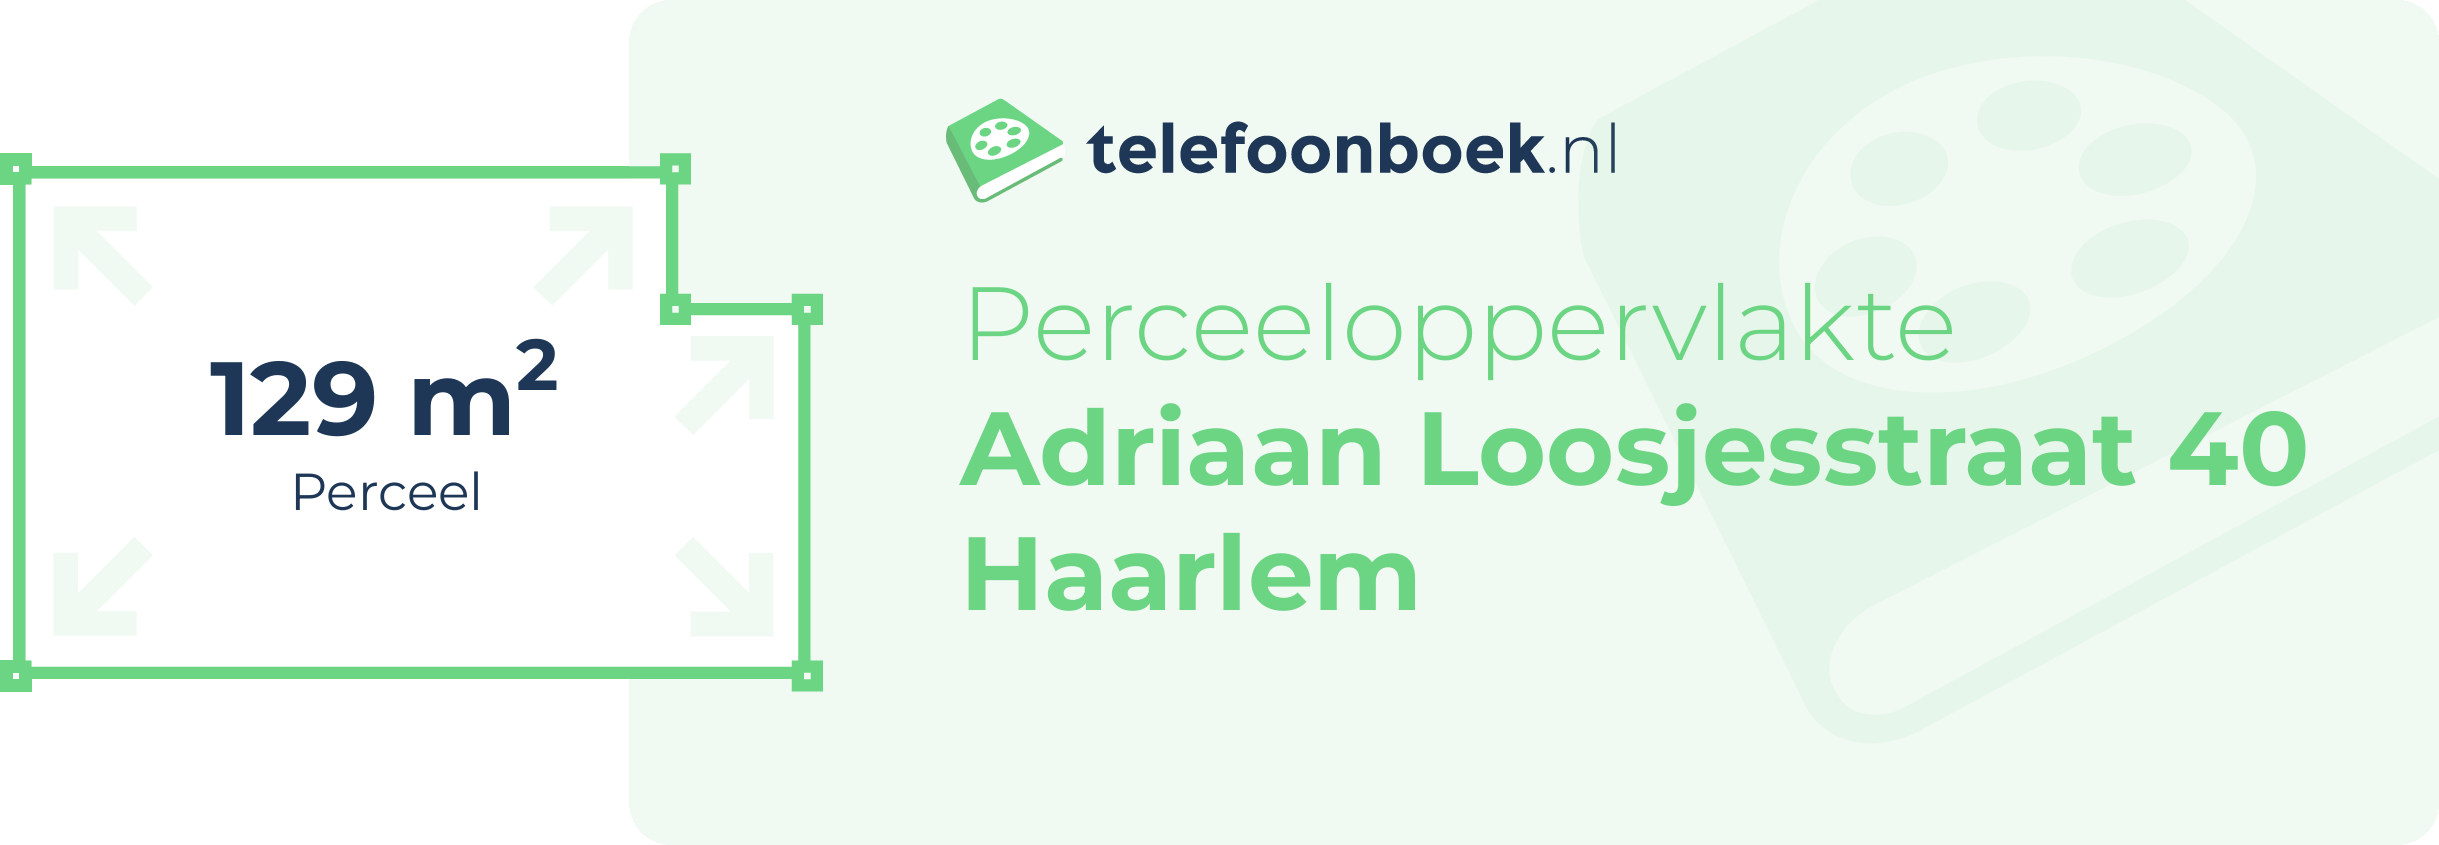 Perceeloppervlakte Adriaan Loosjesstraat 40 Haarlem